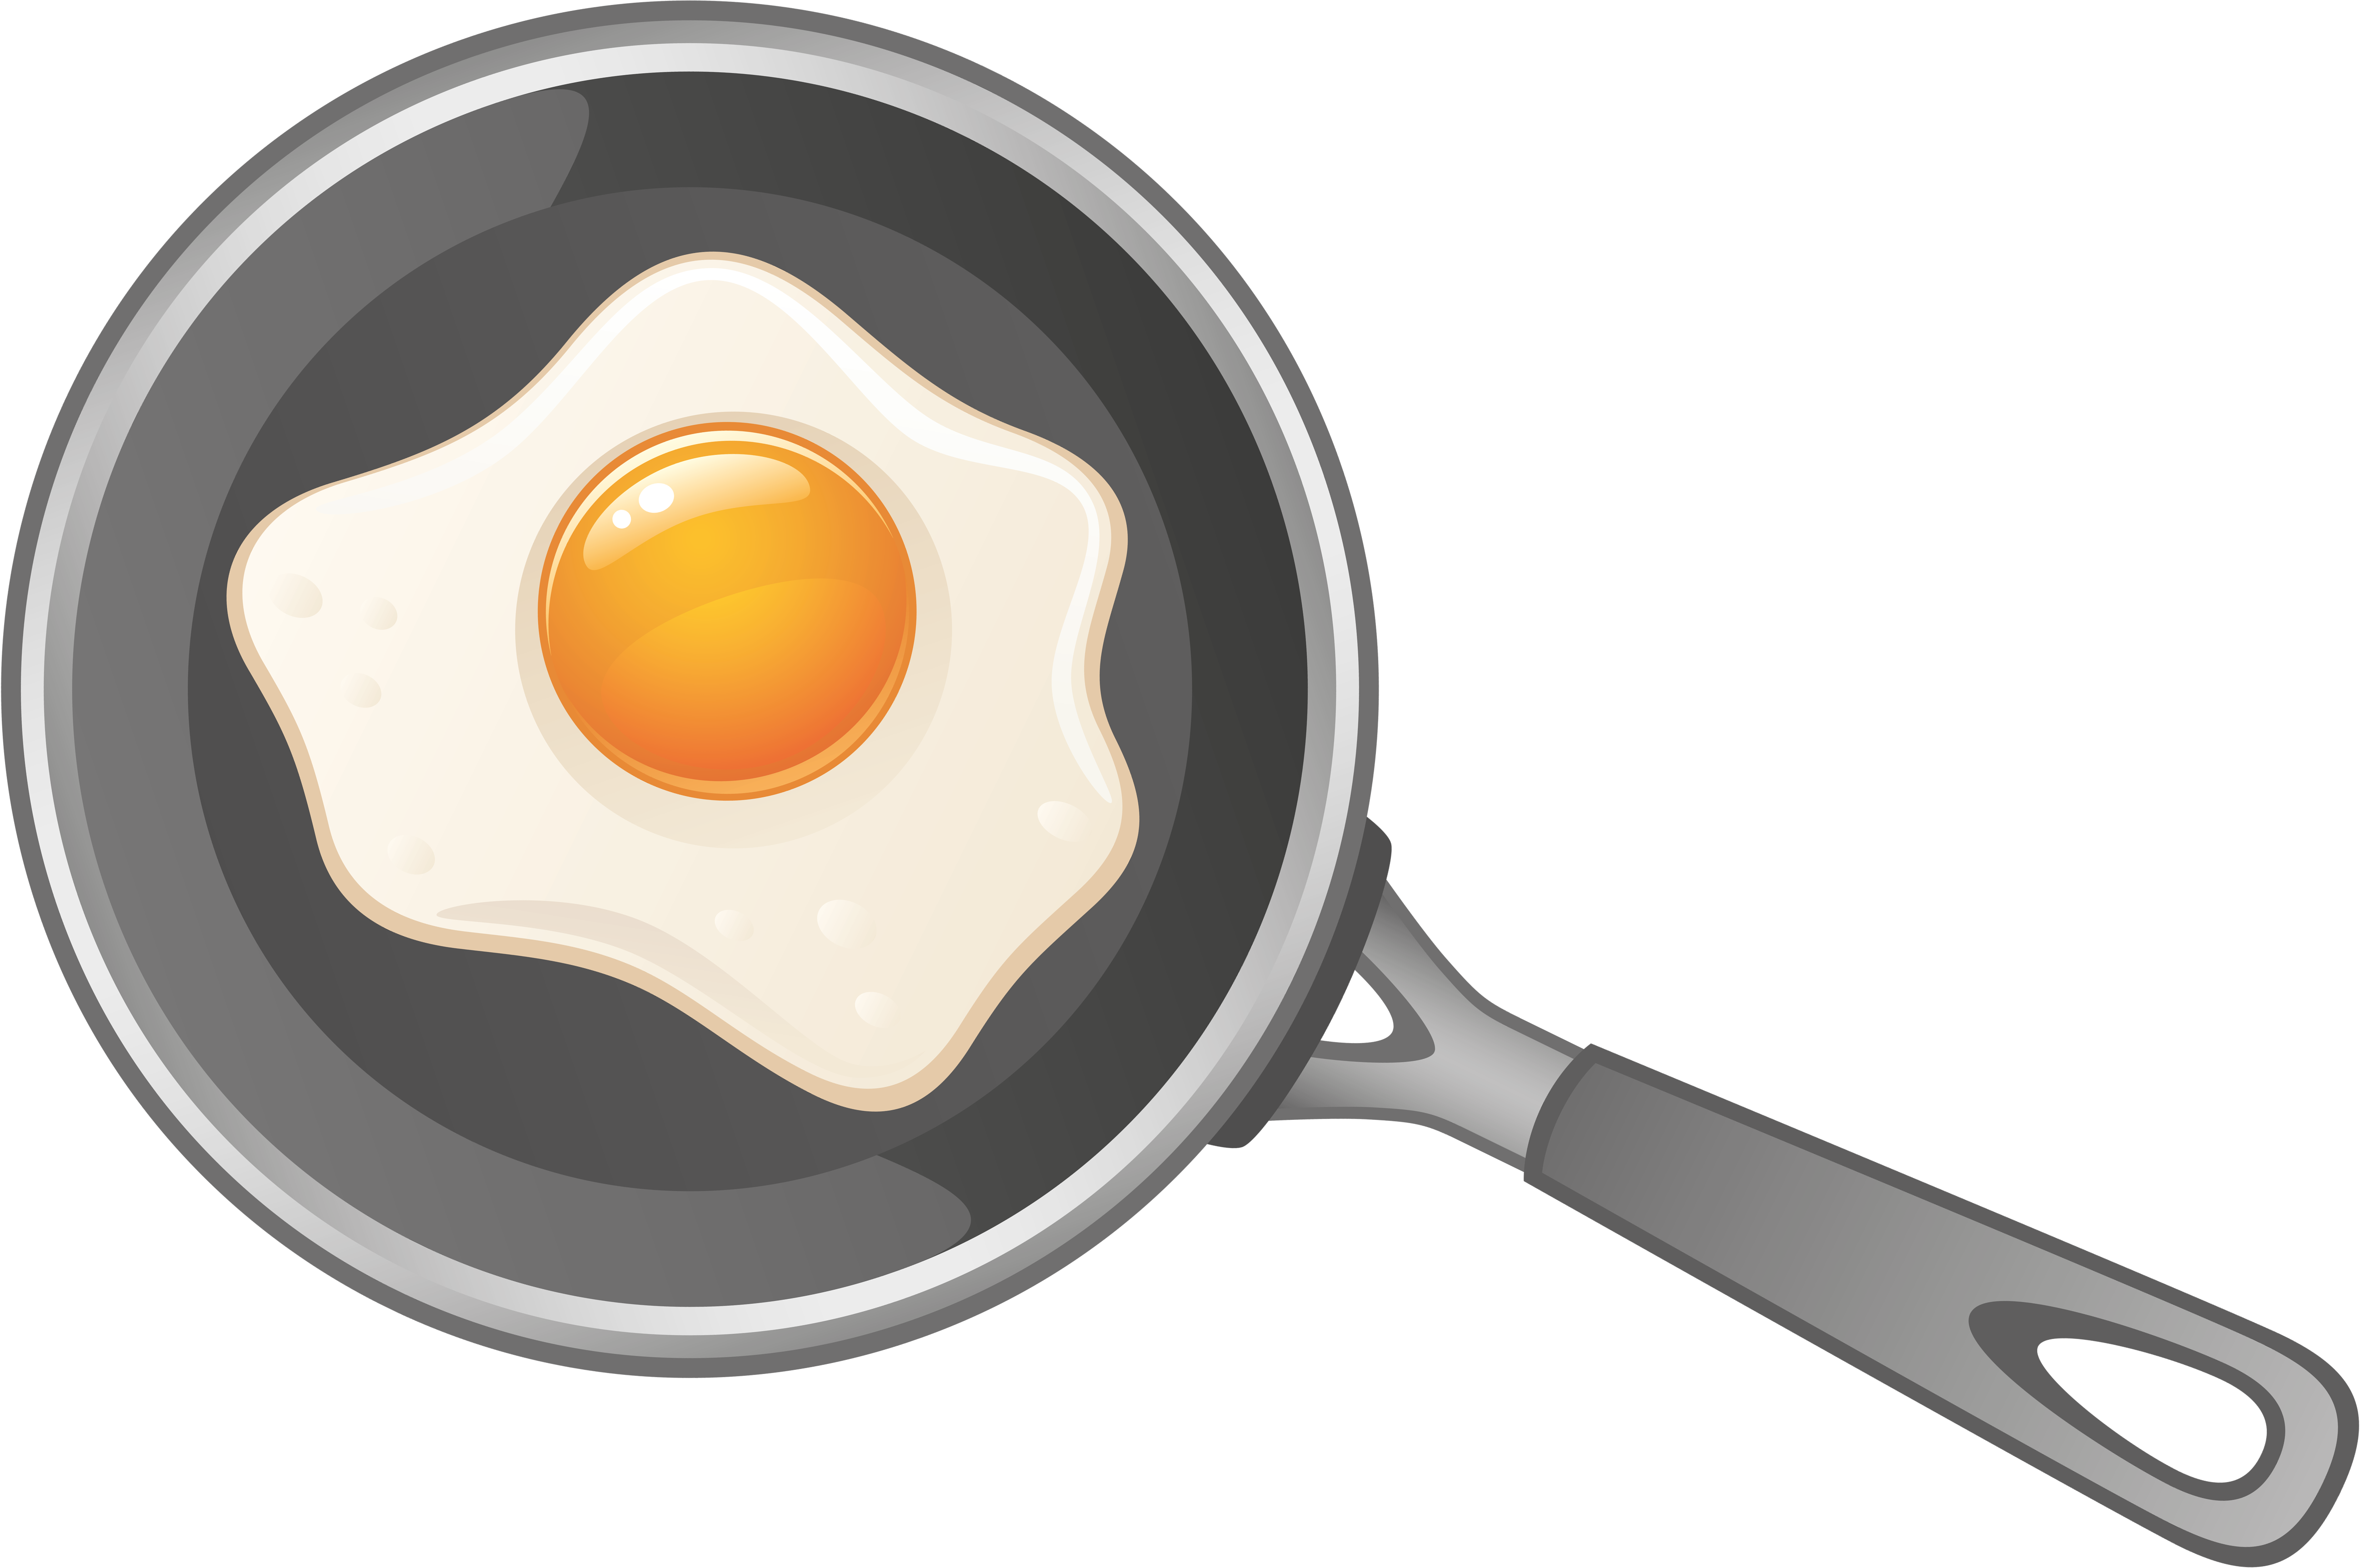 Яичница, жареные яйца PNG